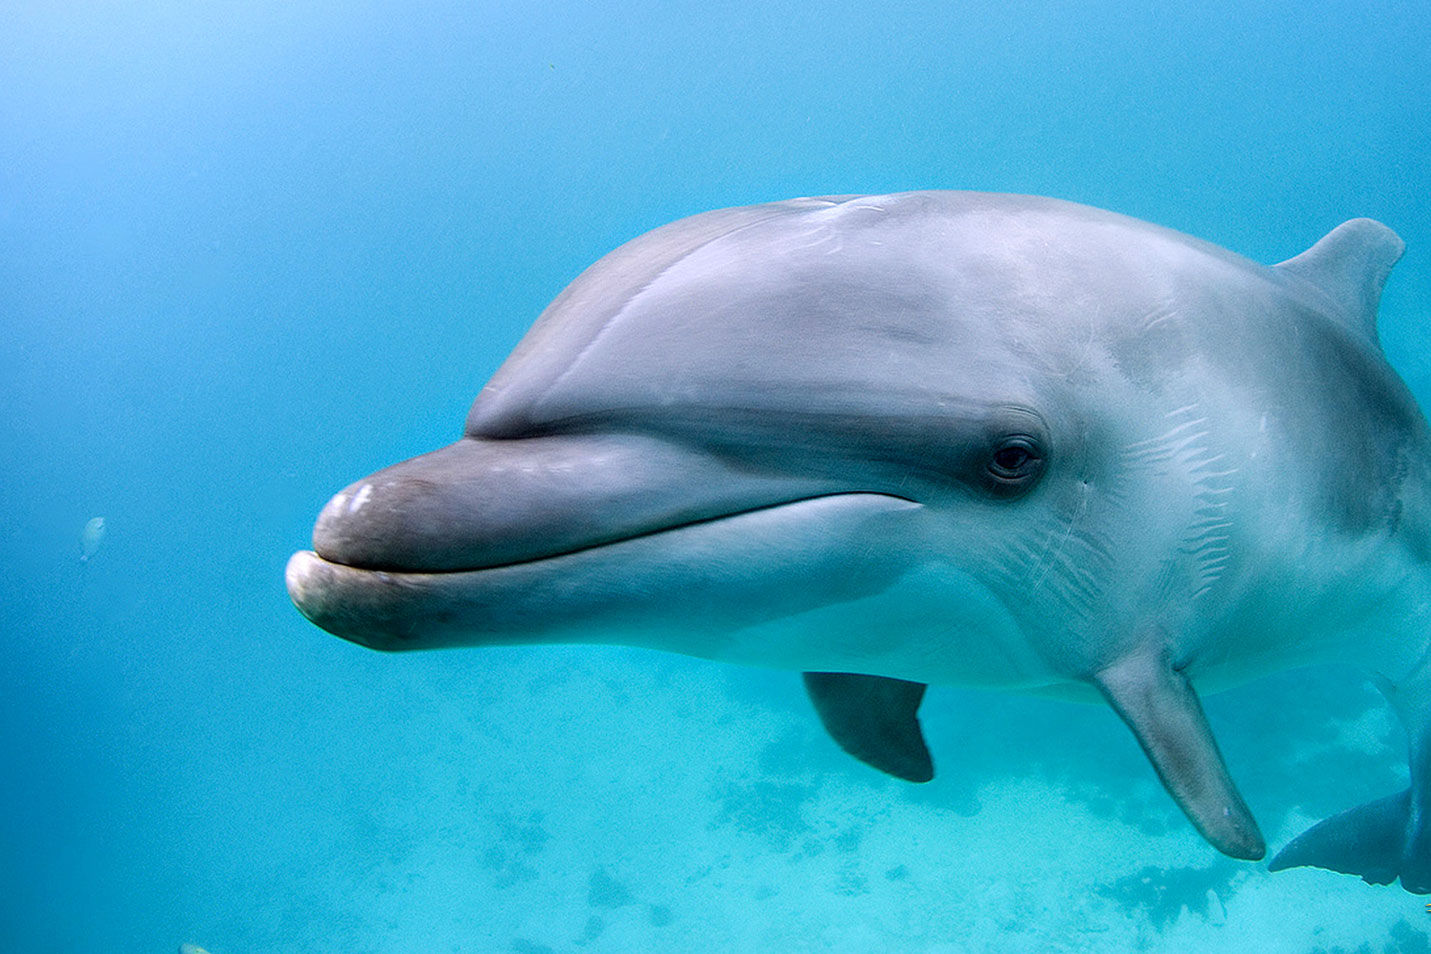 Curious Dolphin